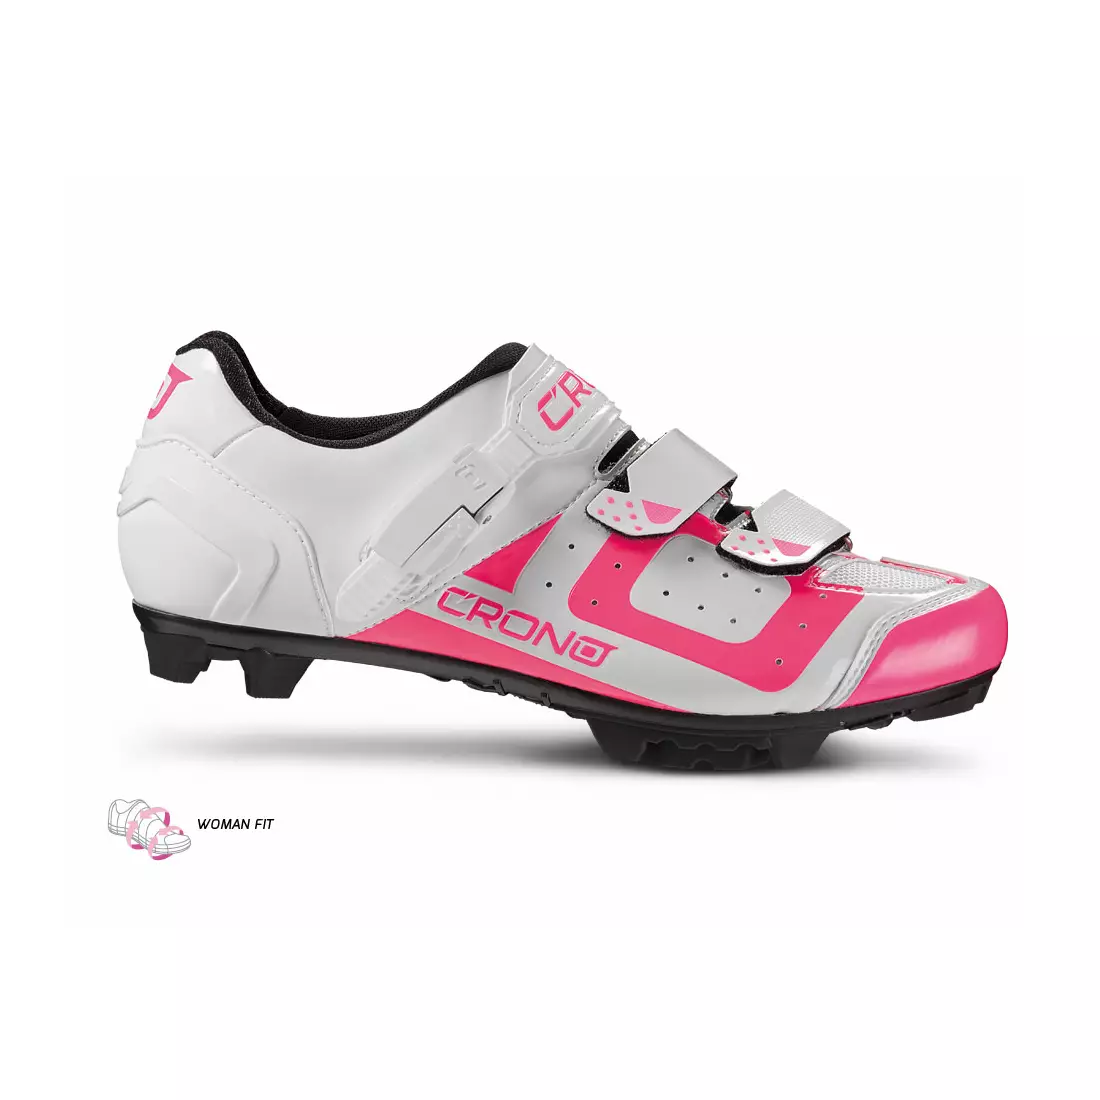 CRONO CX3 Damen-MTB-Fahrradschuhe aus Nylon, weiß und rosa